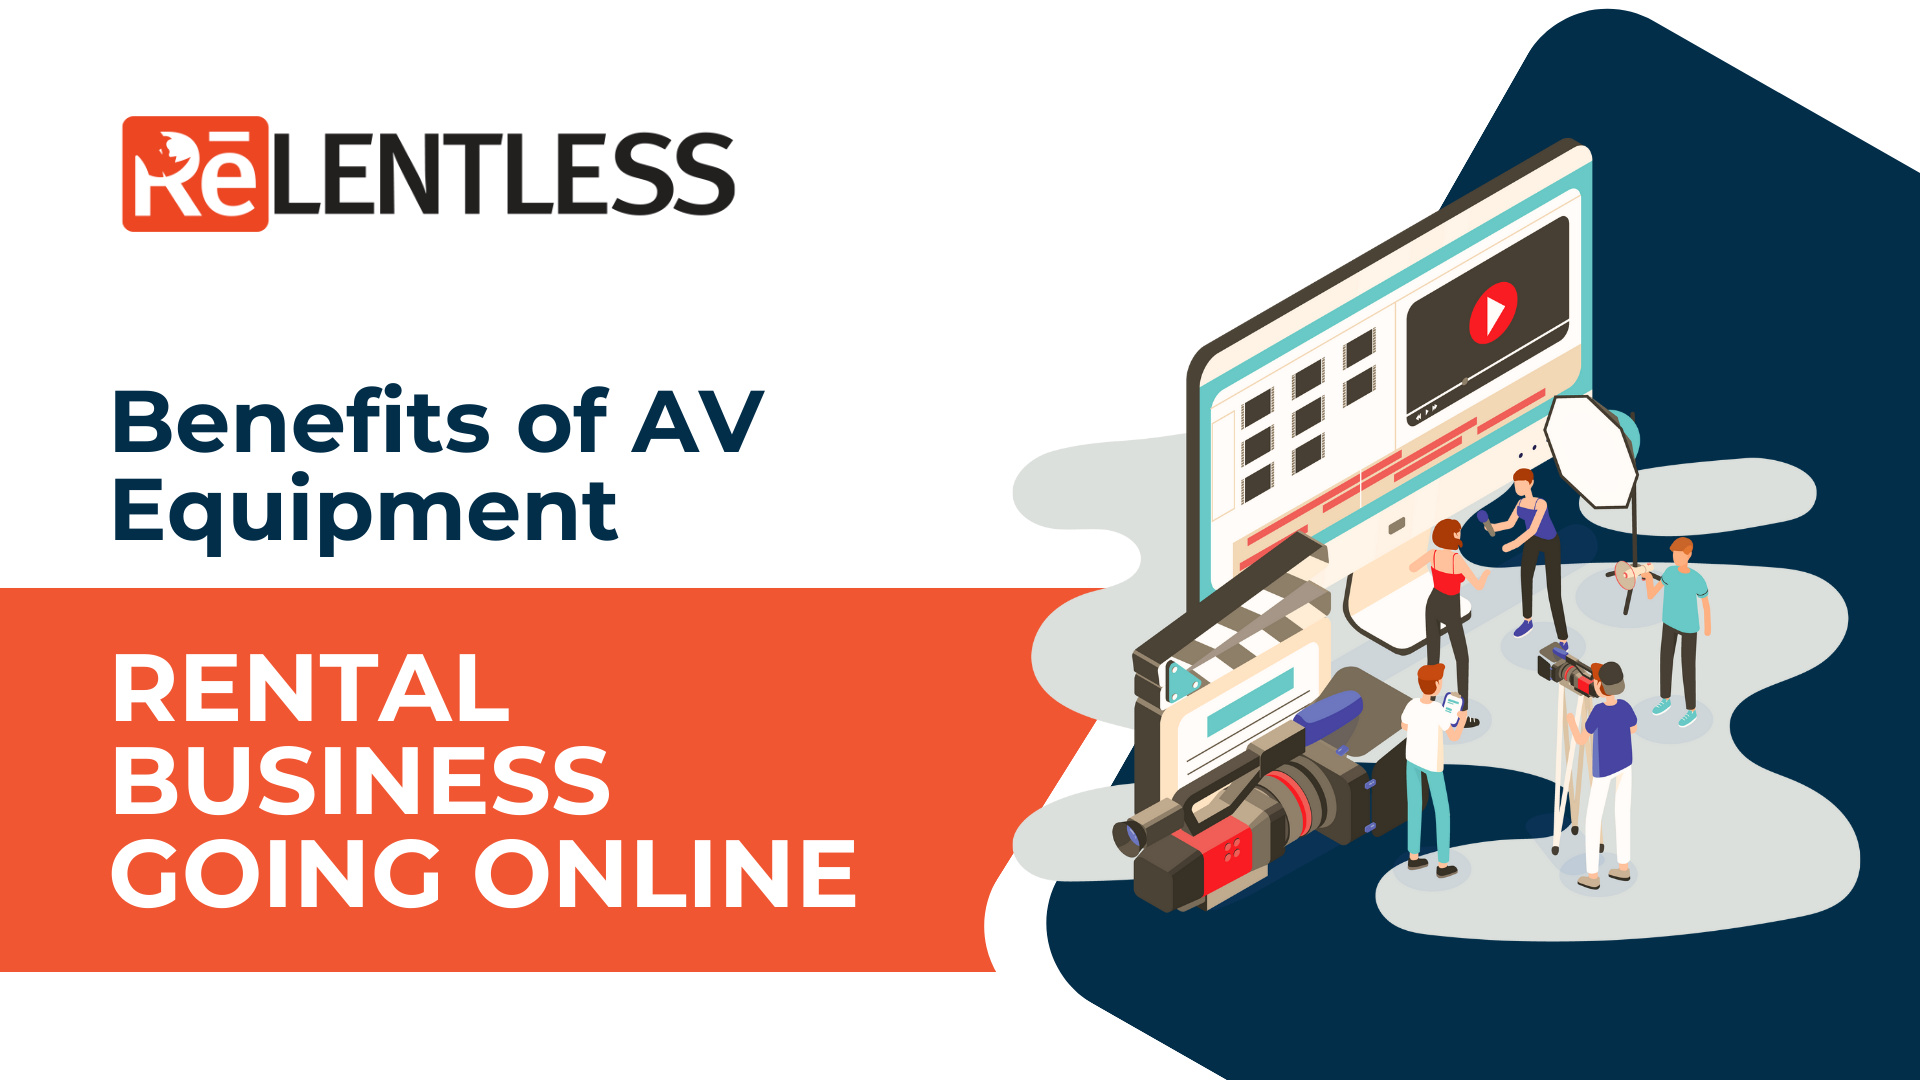 Benefits of AV Equipment Rental Business Going Online